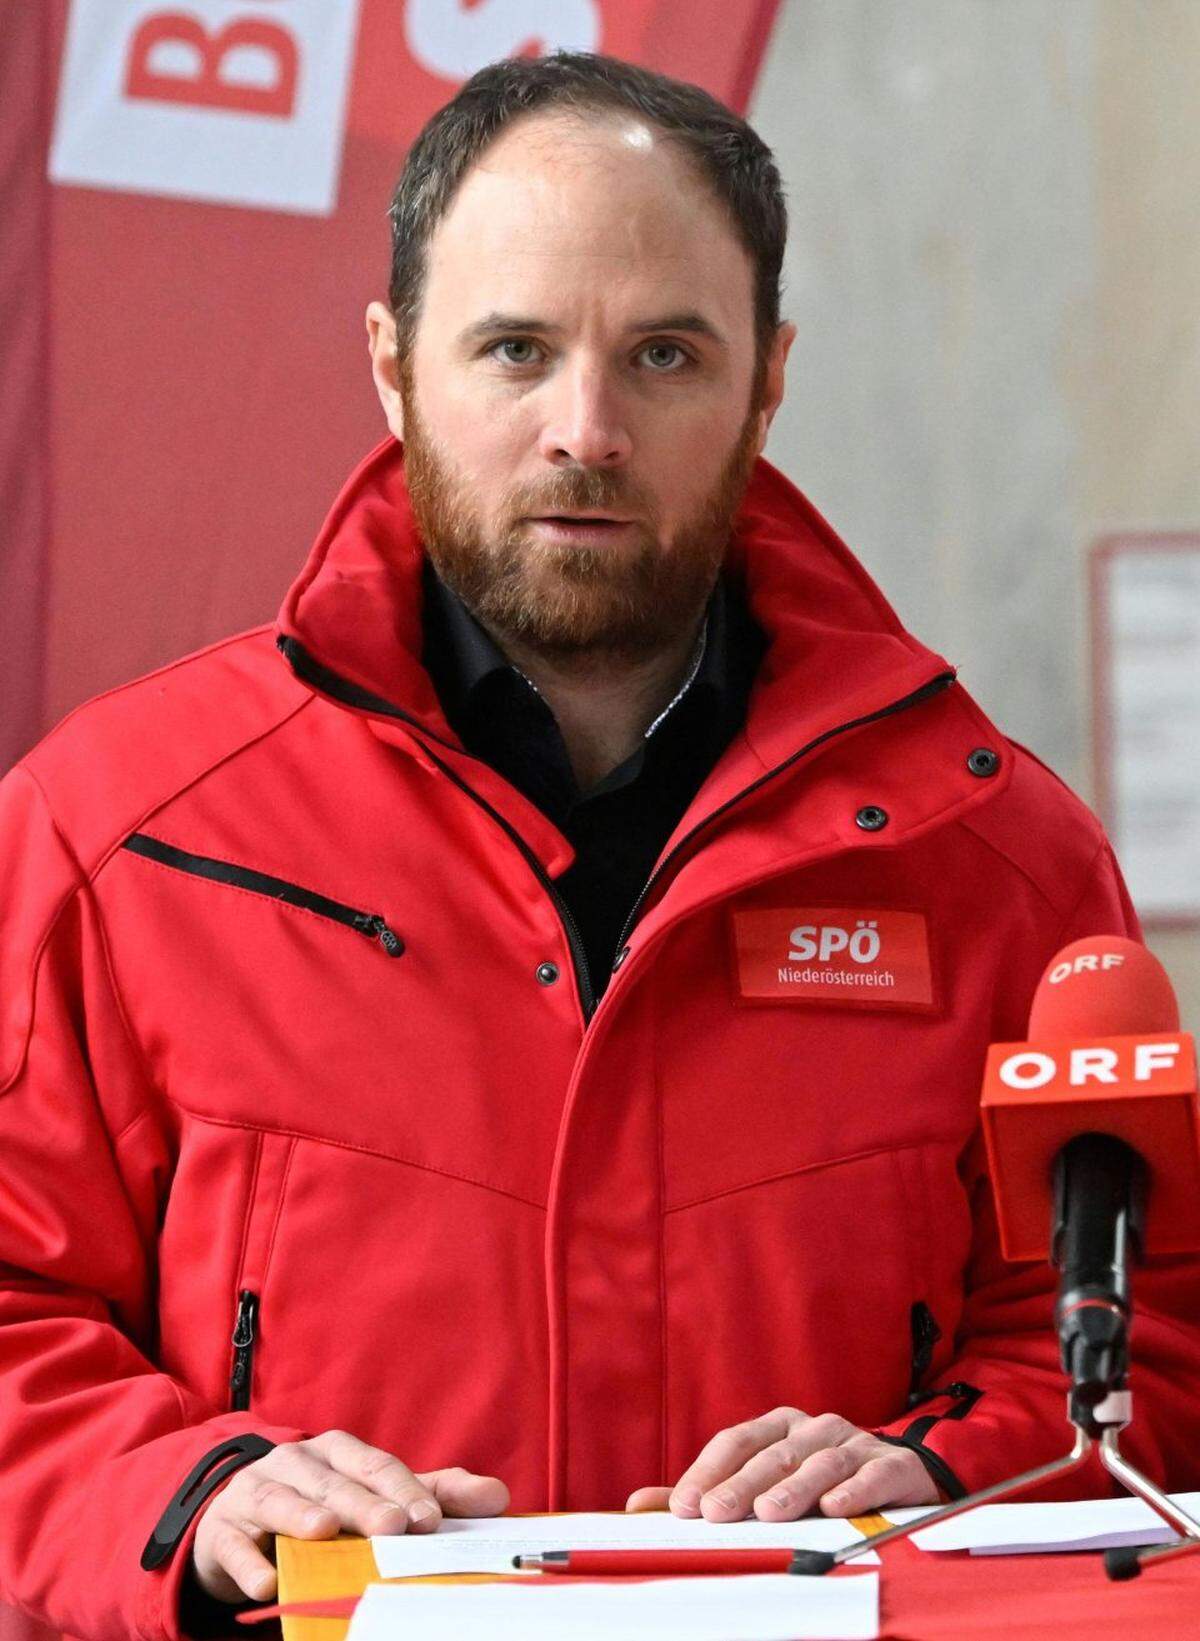 Klaus Seltenheim